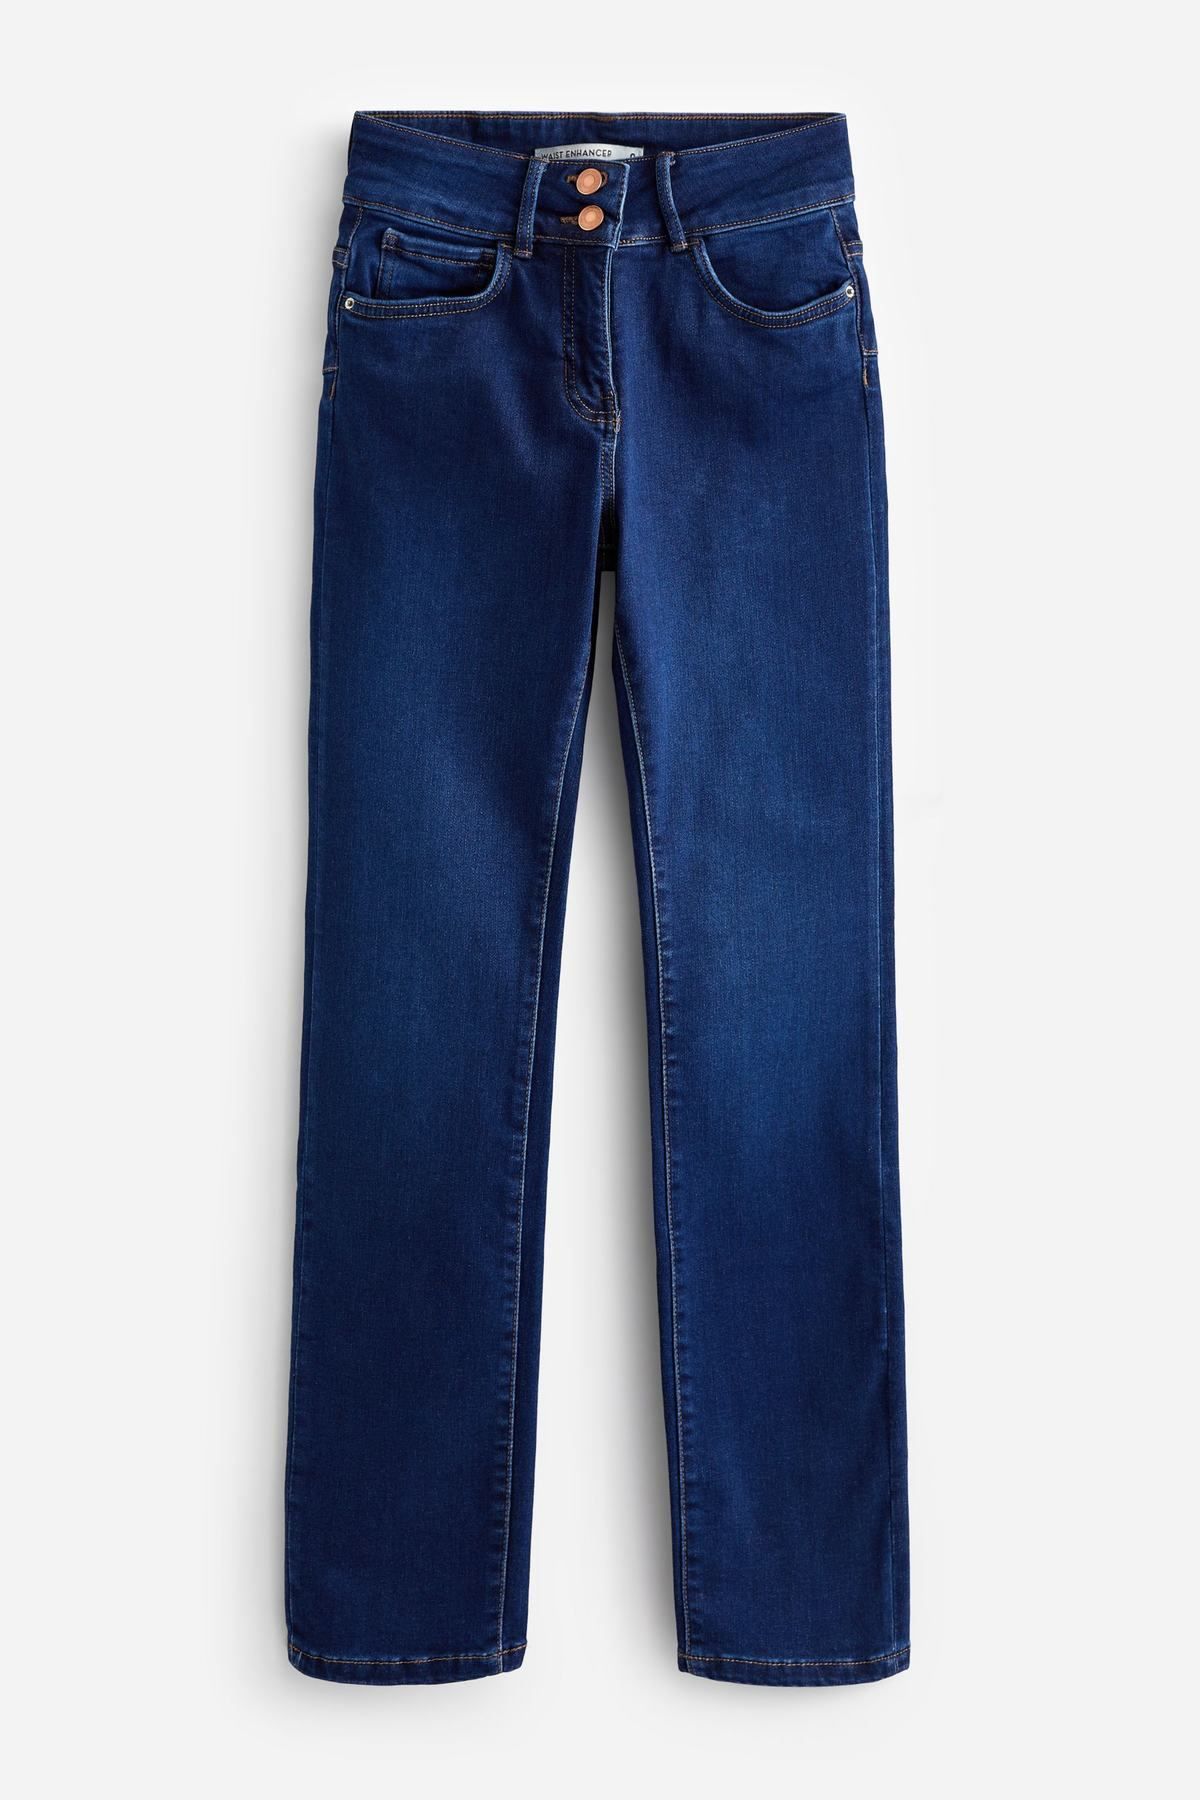 NEXT enhancer-slim-jeans-nxt-a44422-denimdarkblue White Women Jeans